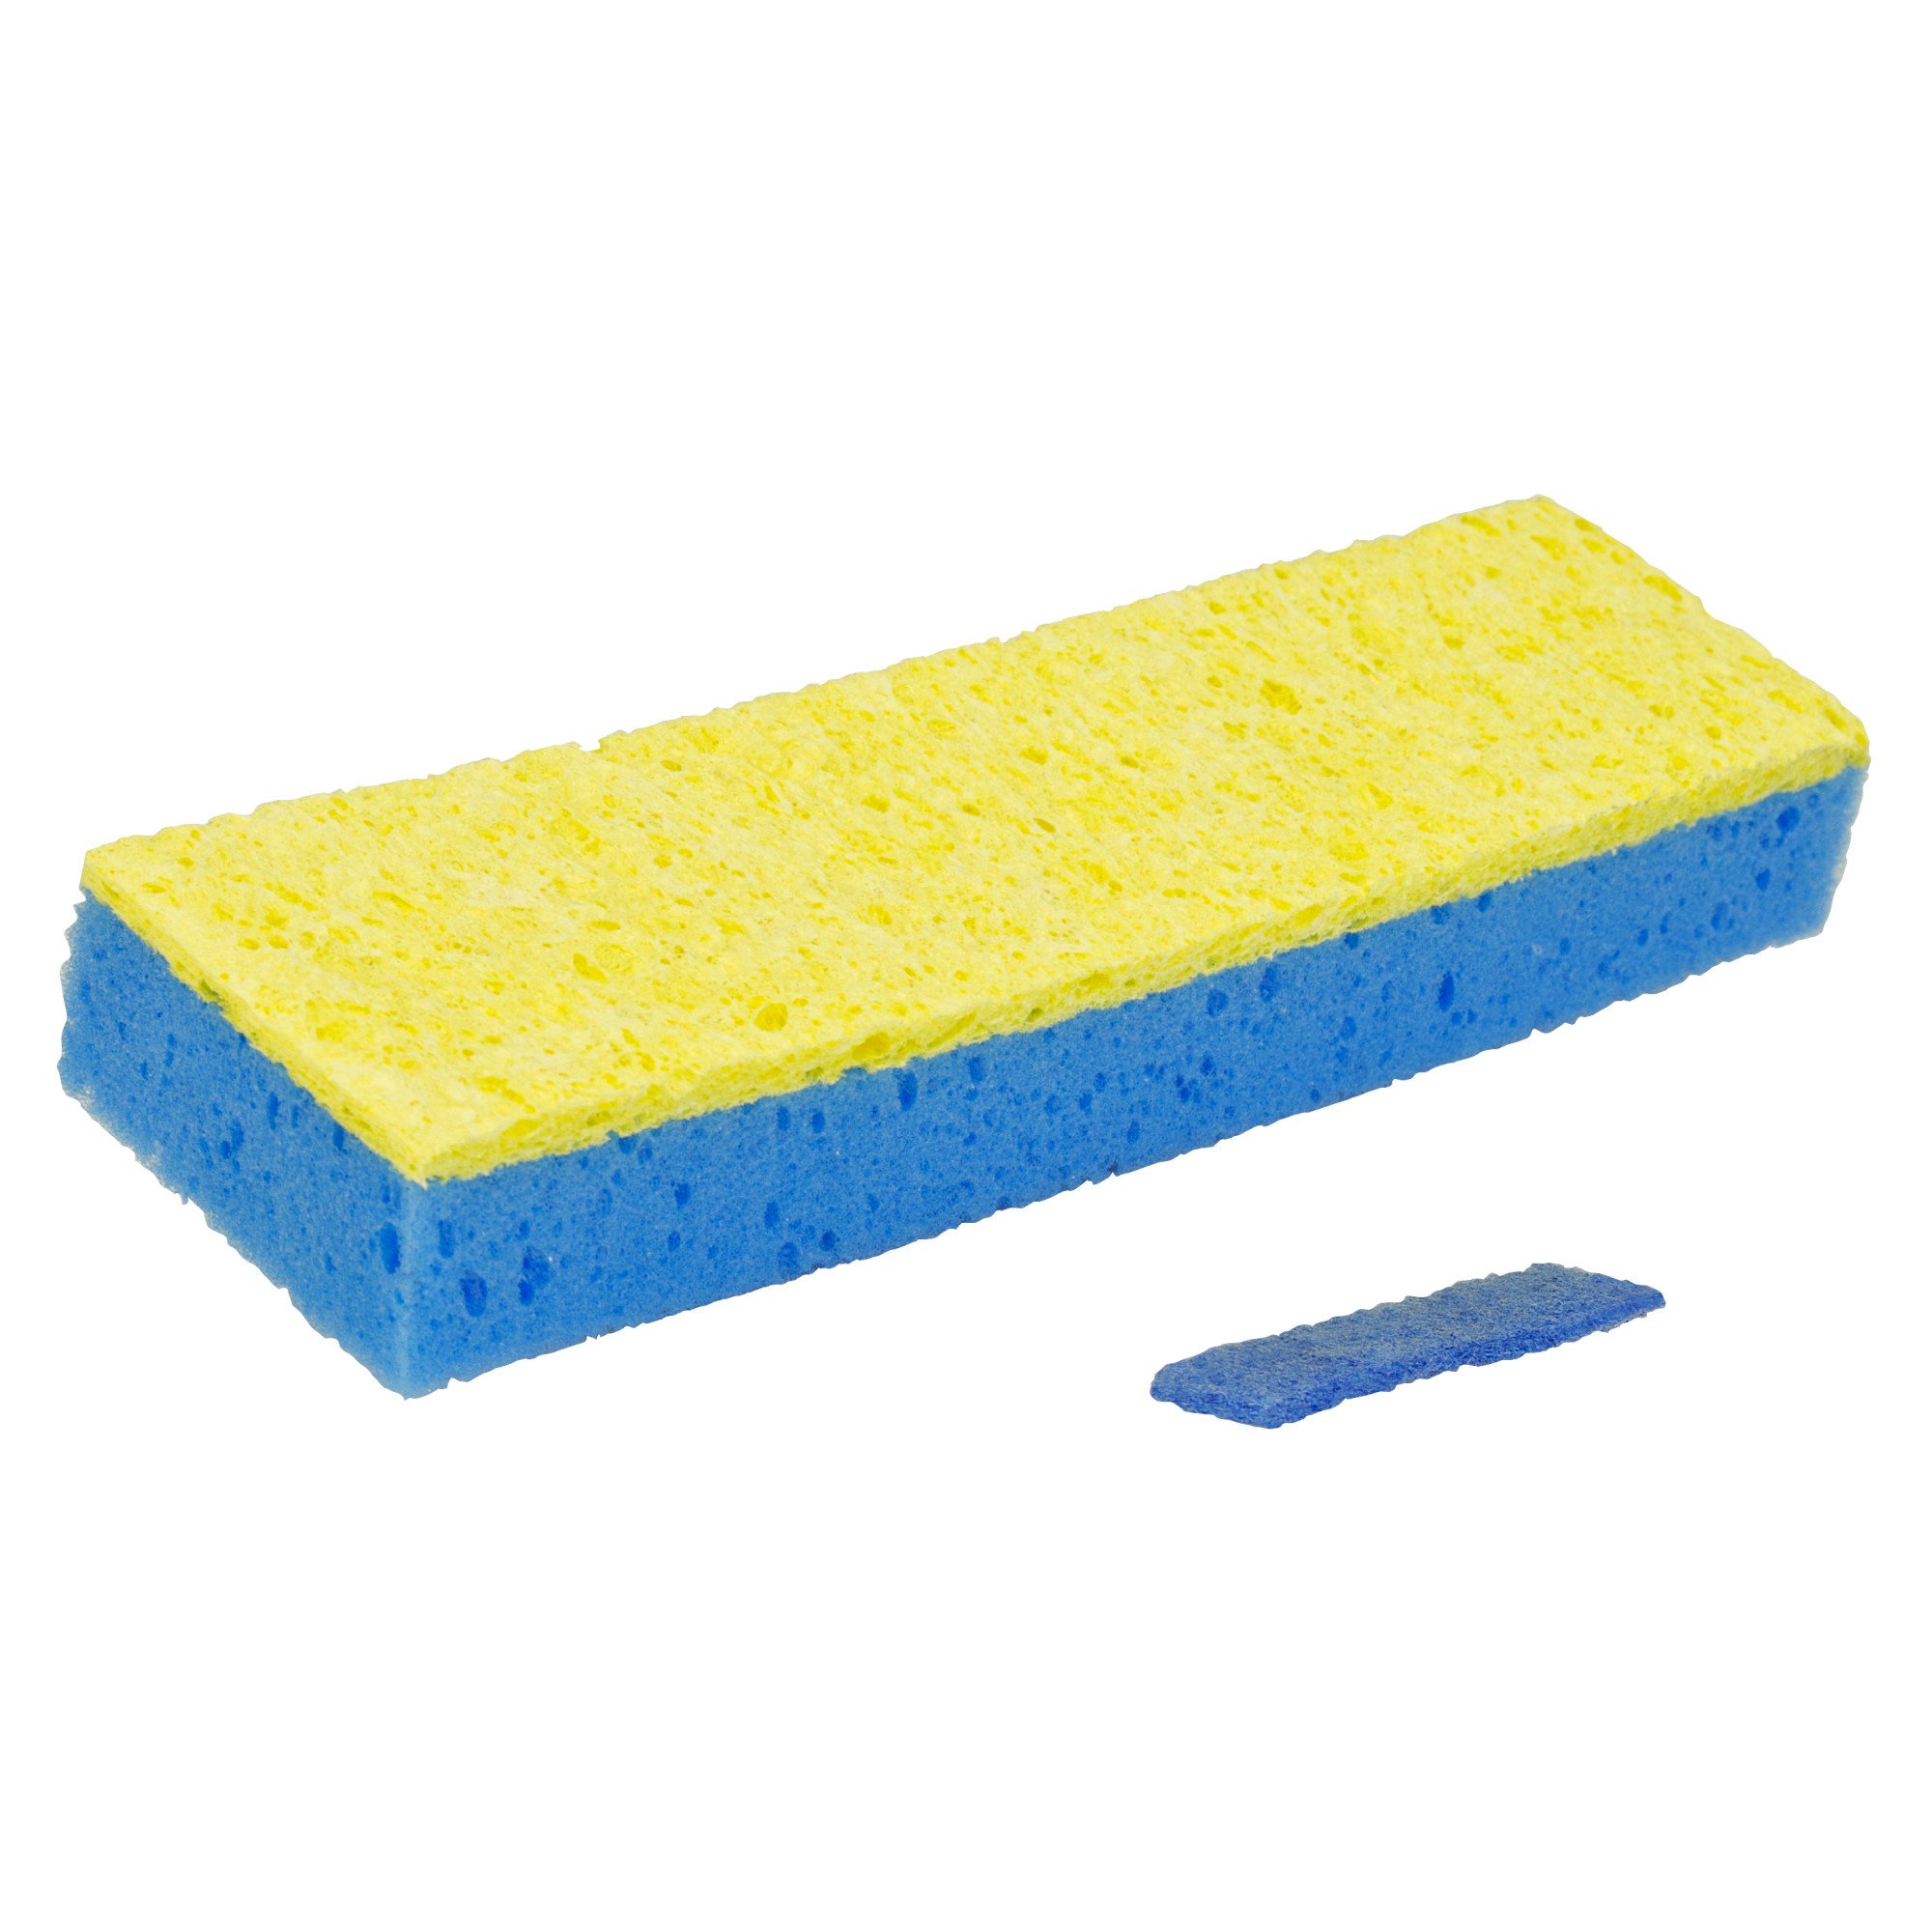 VENETIO Sponge Mop and 1 Extra Sponge Mop Refill 